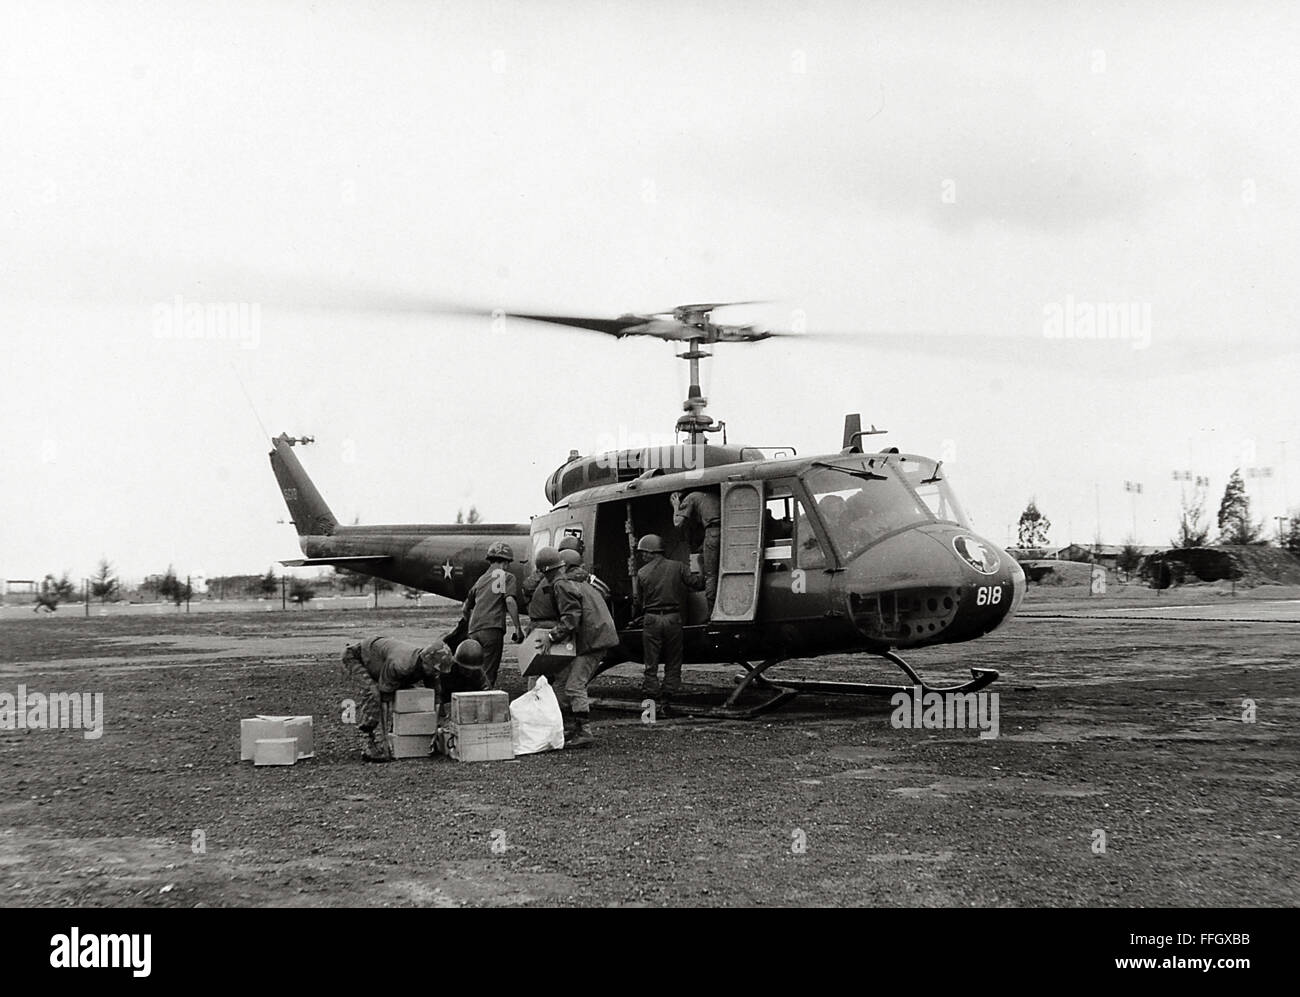 Truppen der Armee der Republik Vietnam laden zusätzliche Munition auf einem UH - 1H Huey für die Truppen im Feld. Stockfoto